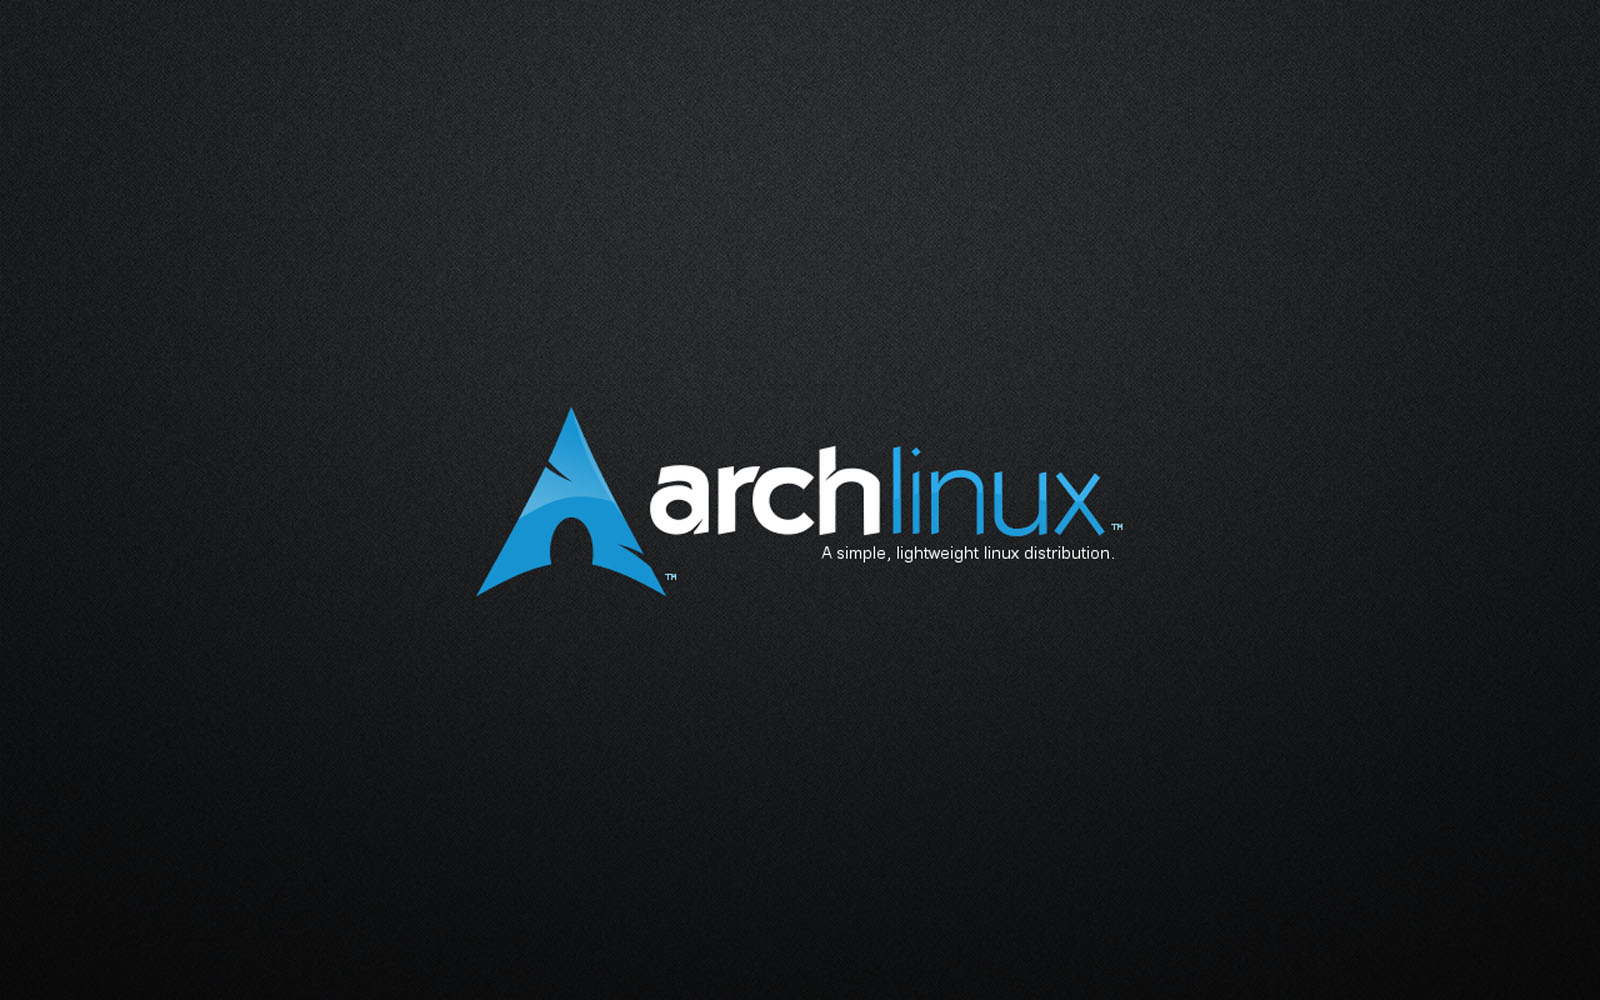 Bộ sưu tập Arch Linux Desktop Wallpaper là một điều tuyệt vời để cập nhật cho máy tính của bạn. Những hình nền tuyệt đẹp này sẽ mang lại cảm giác mới mẻ và tươi mới cho máy tính của bạn.